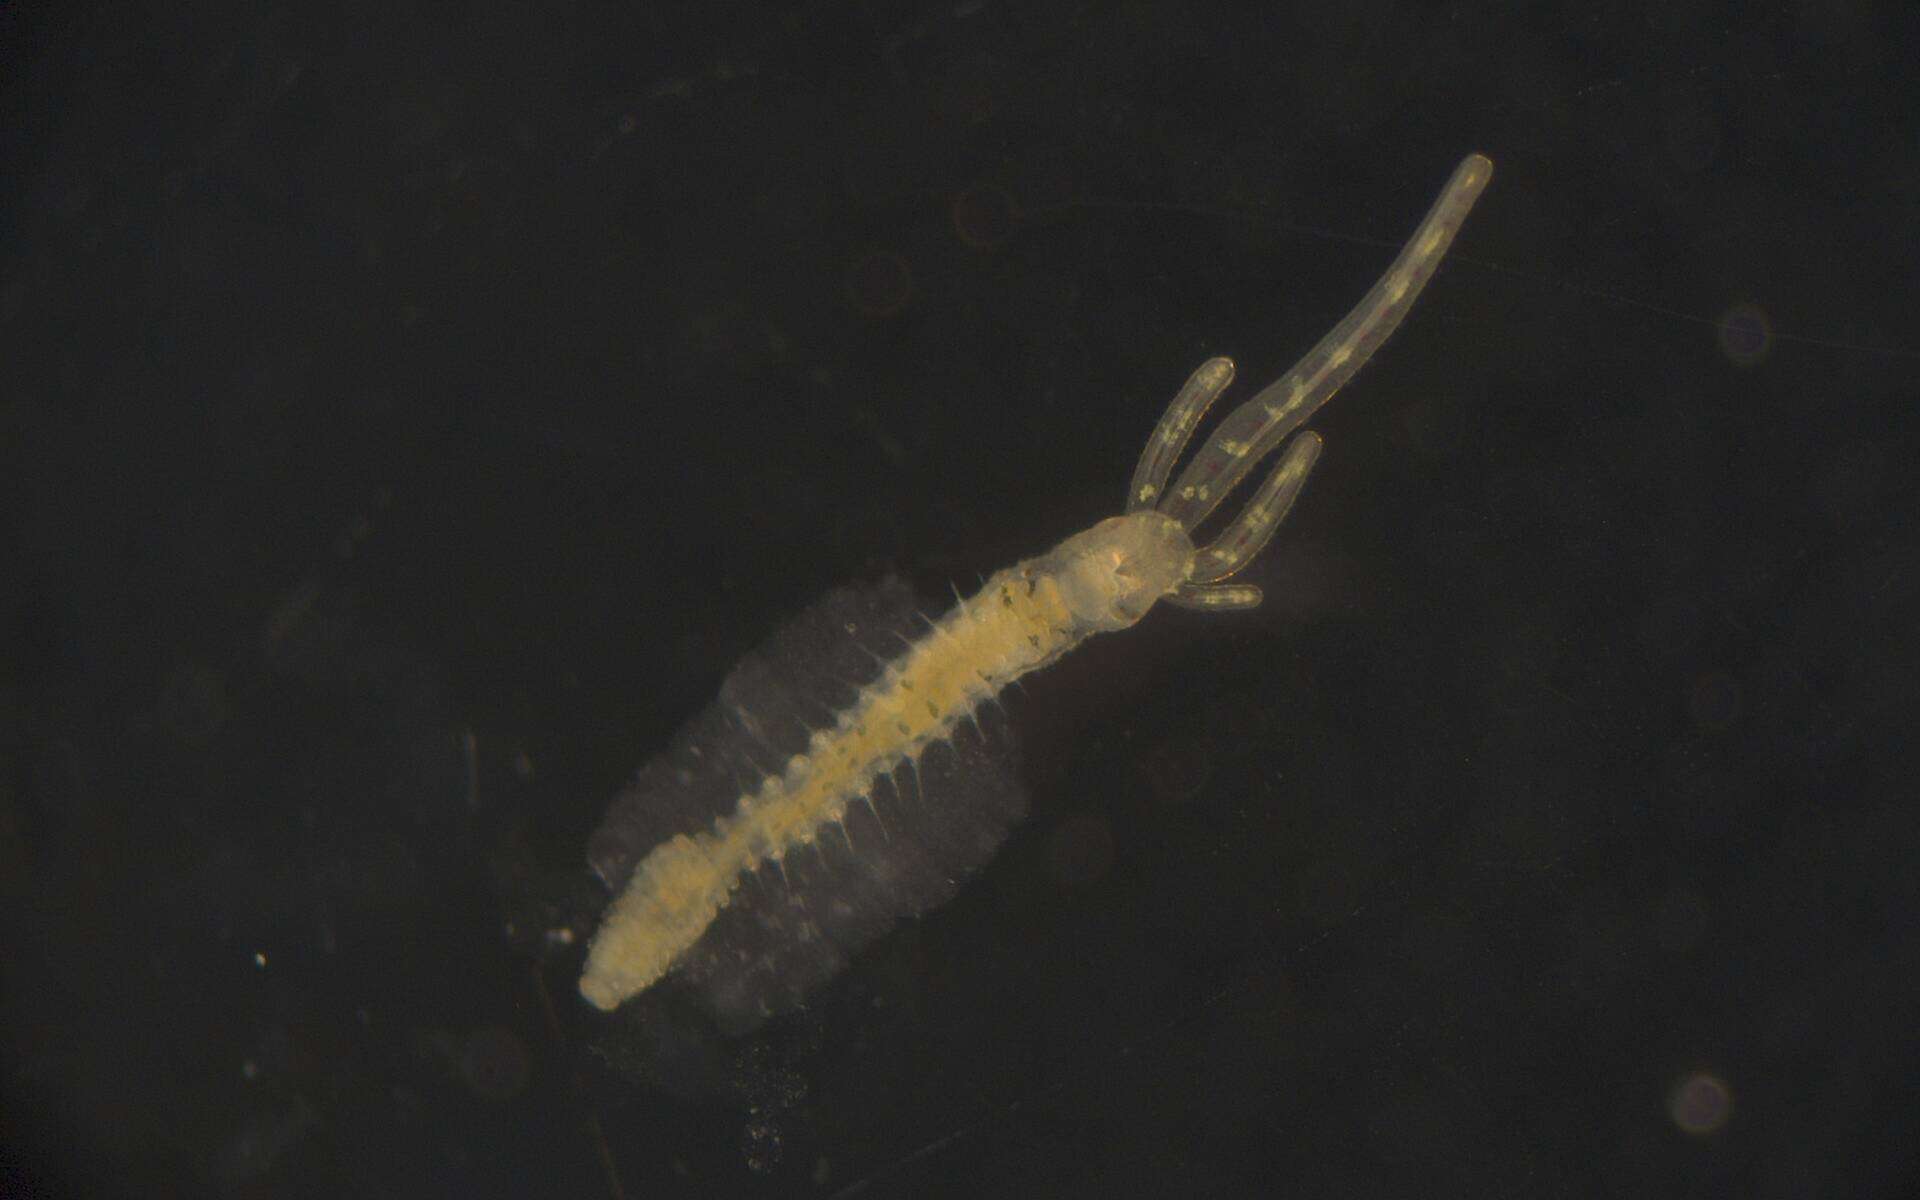 Image of Terebellidae